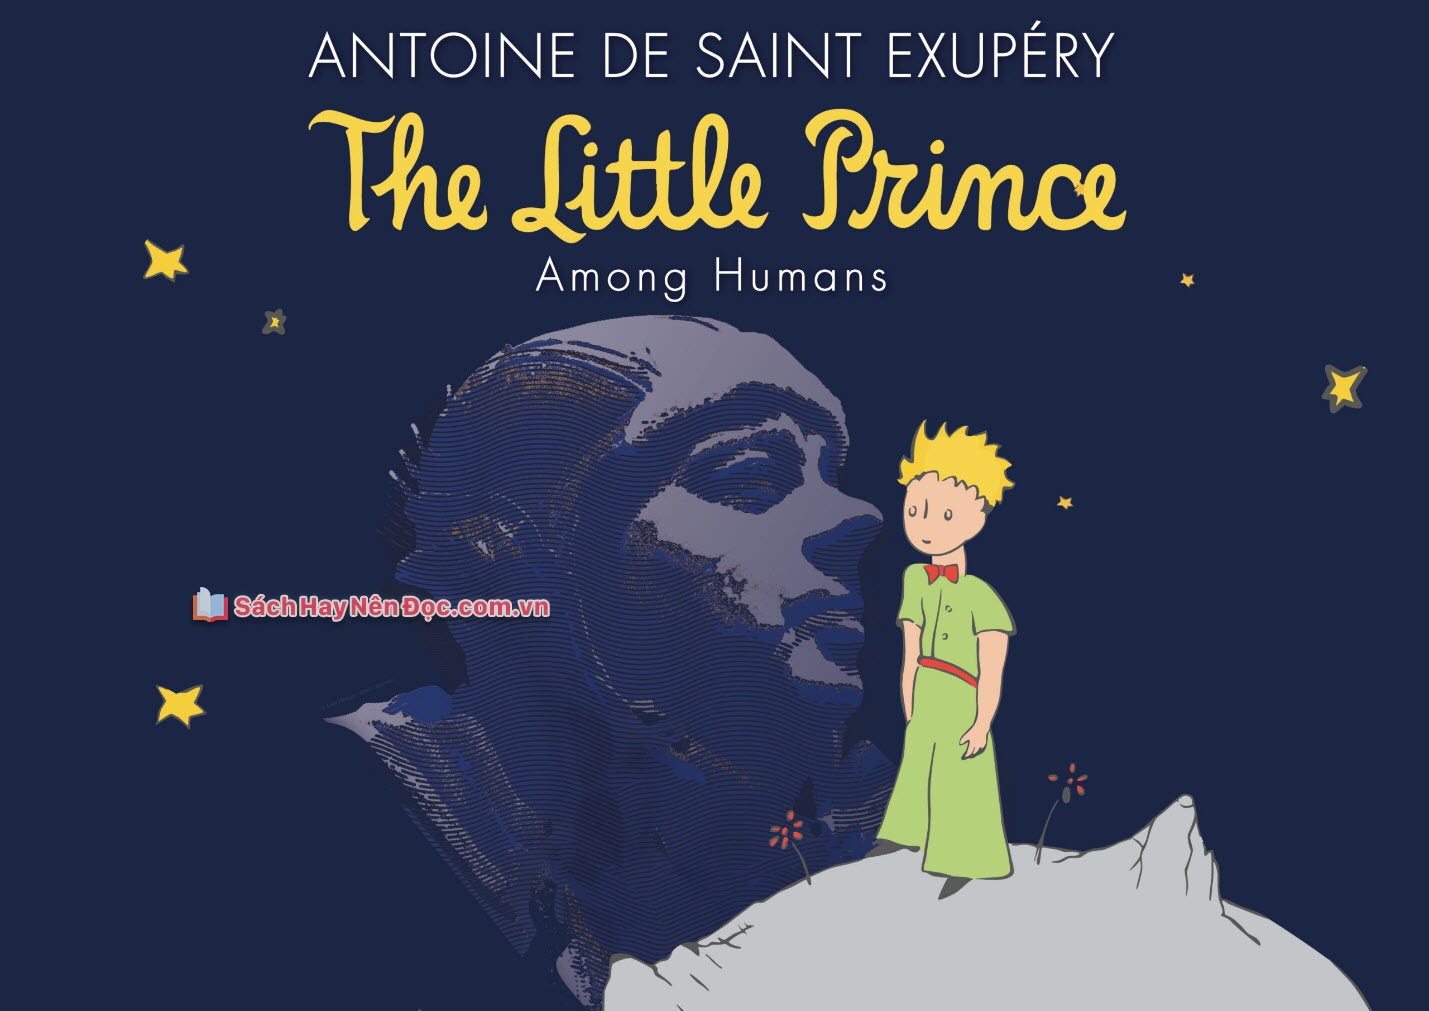 The little prince - Antoine de Saint-Exupéry